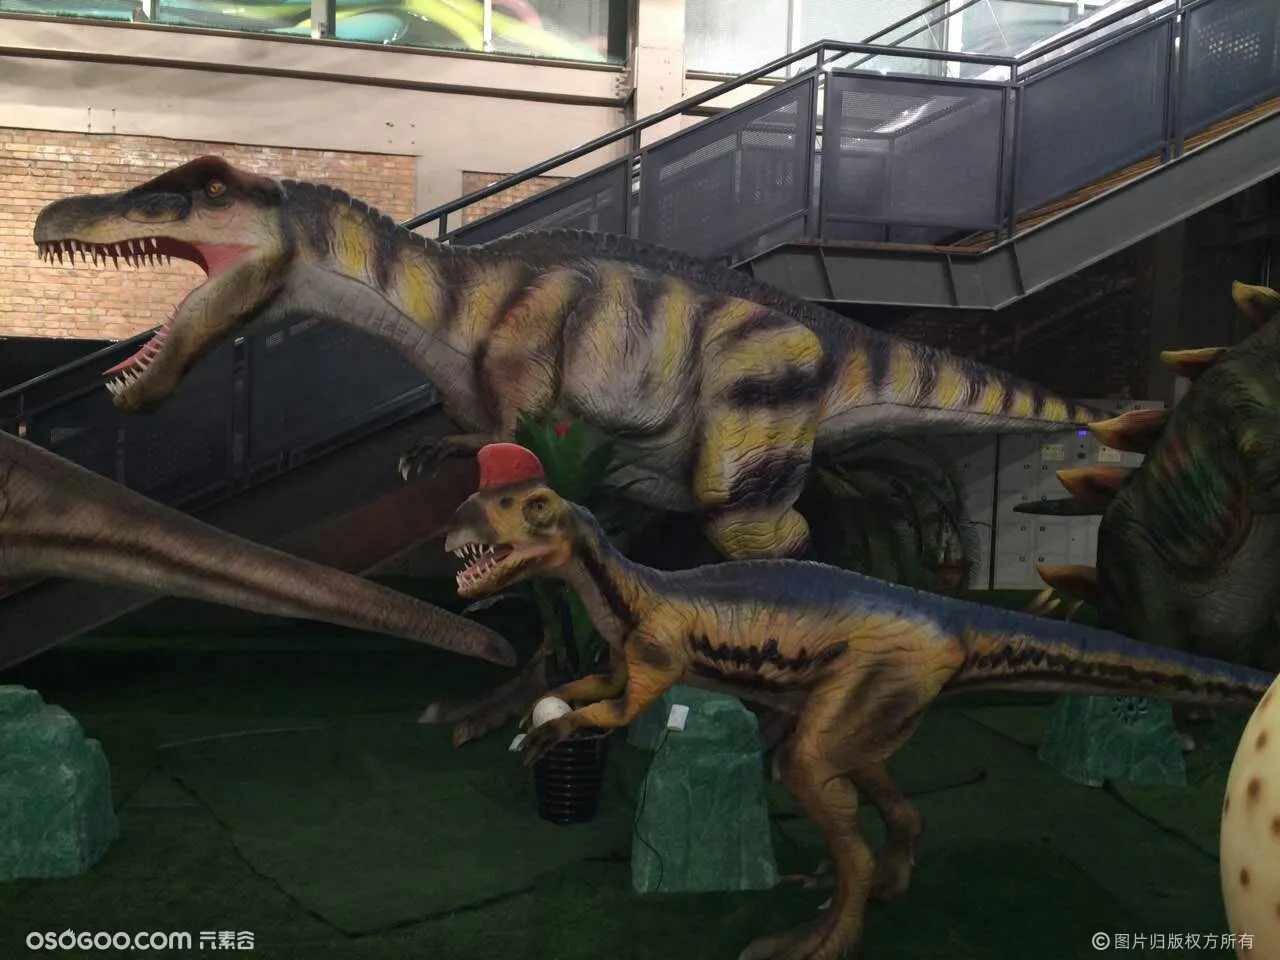 侏罗纪恐龙出租 北京市仿真恐龙出租 专业团队安装